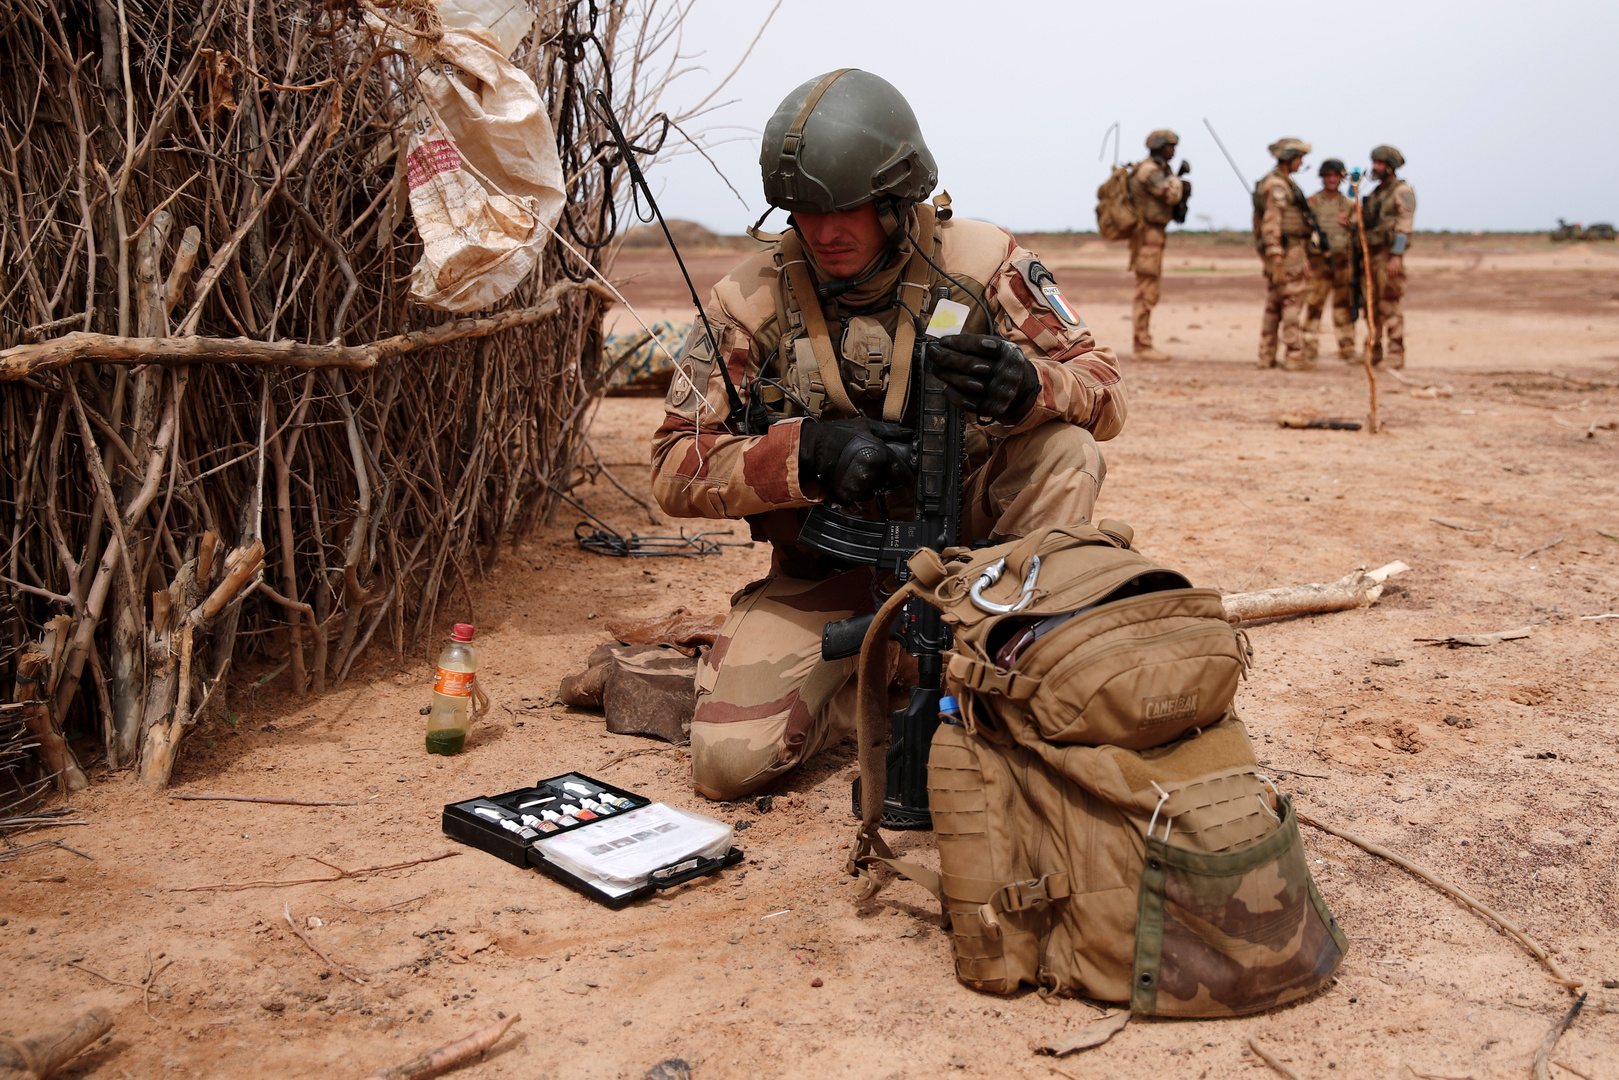   فرنسا تخسر 3 جنود بانفجار عبوة ناسفة في مالي